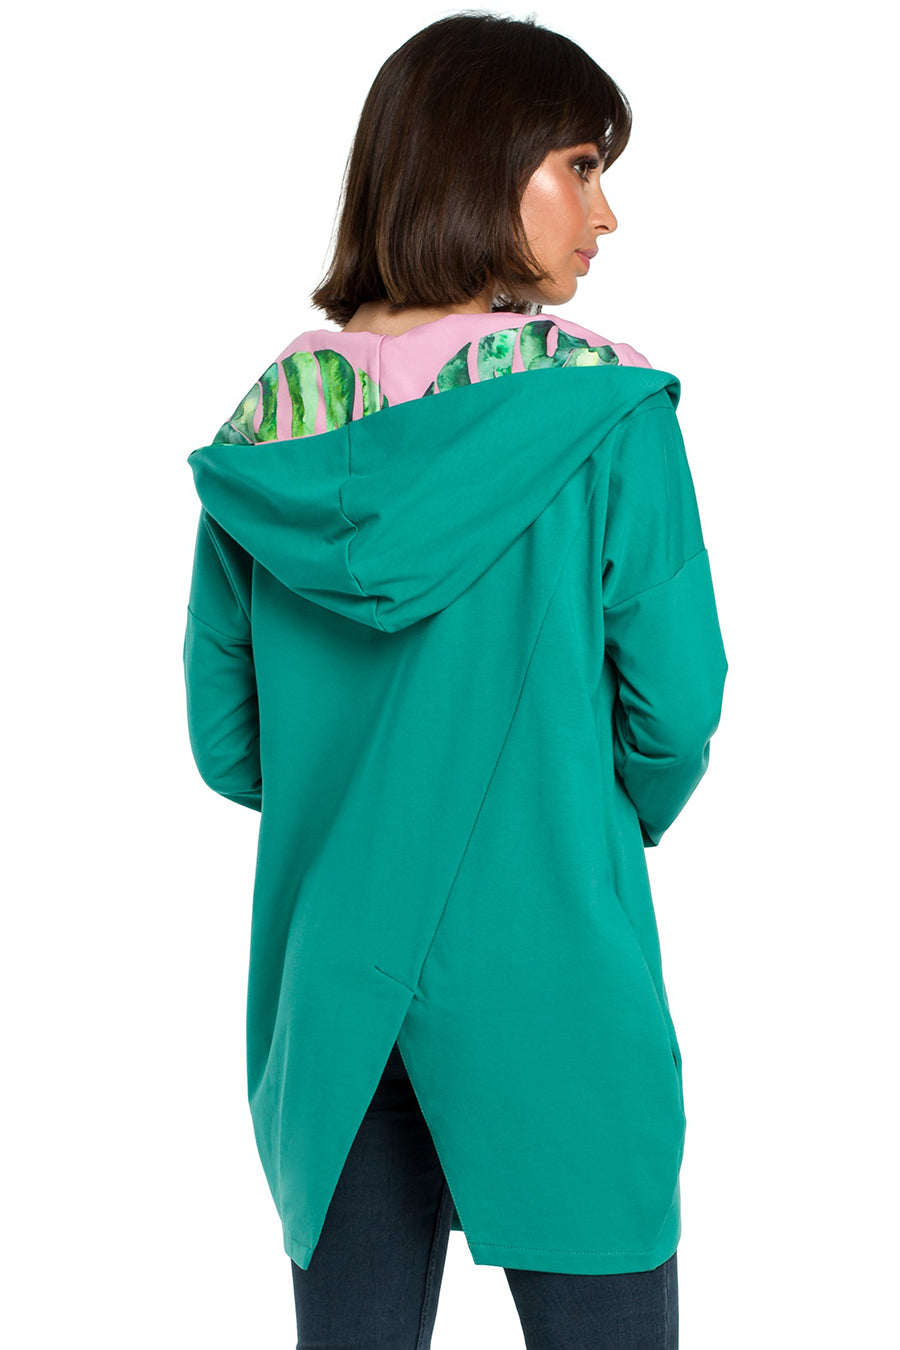 Γυναικείο φούτερ με κουκούλα Sevgi, Πράσινο 4